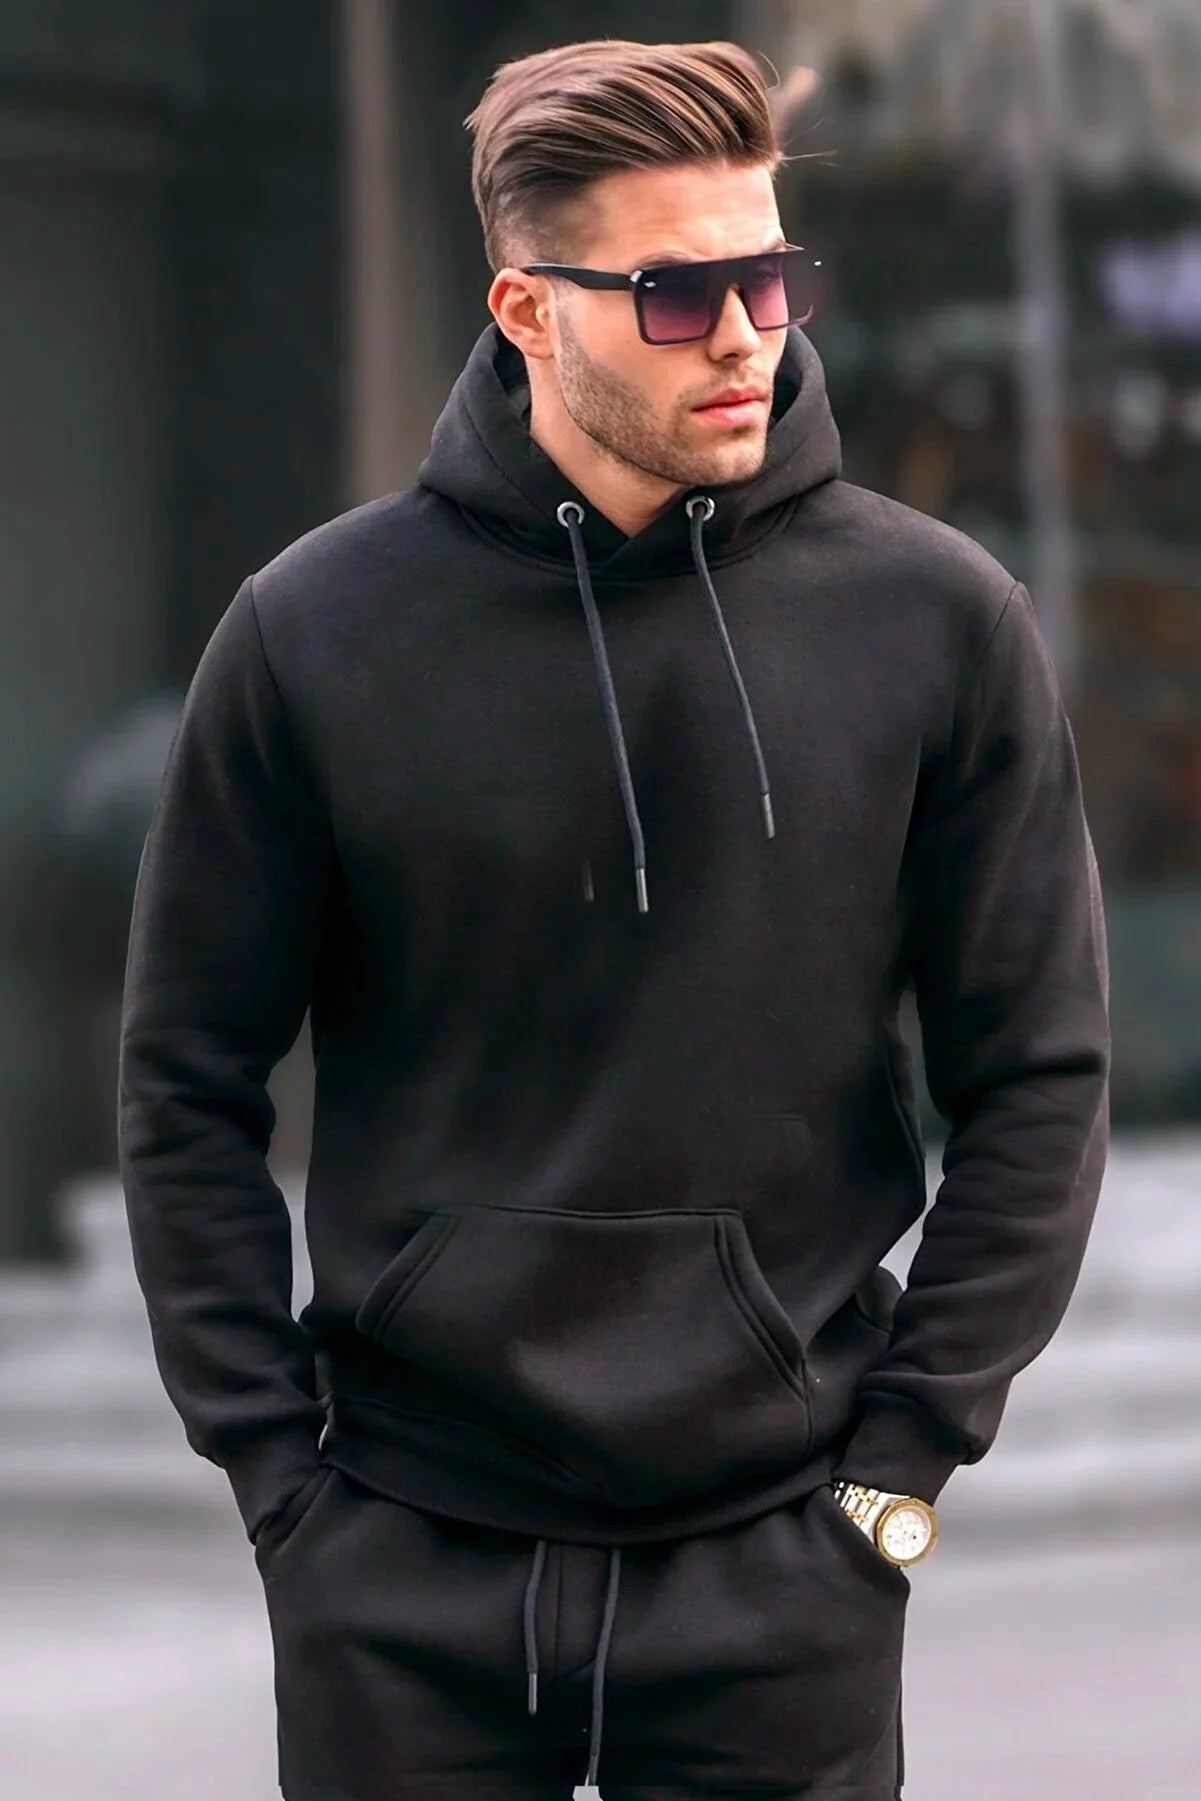 Men's Premium Hooded Sweatshirt